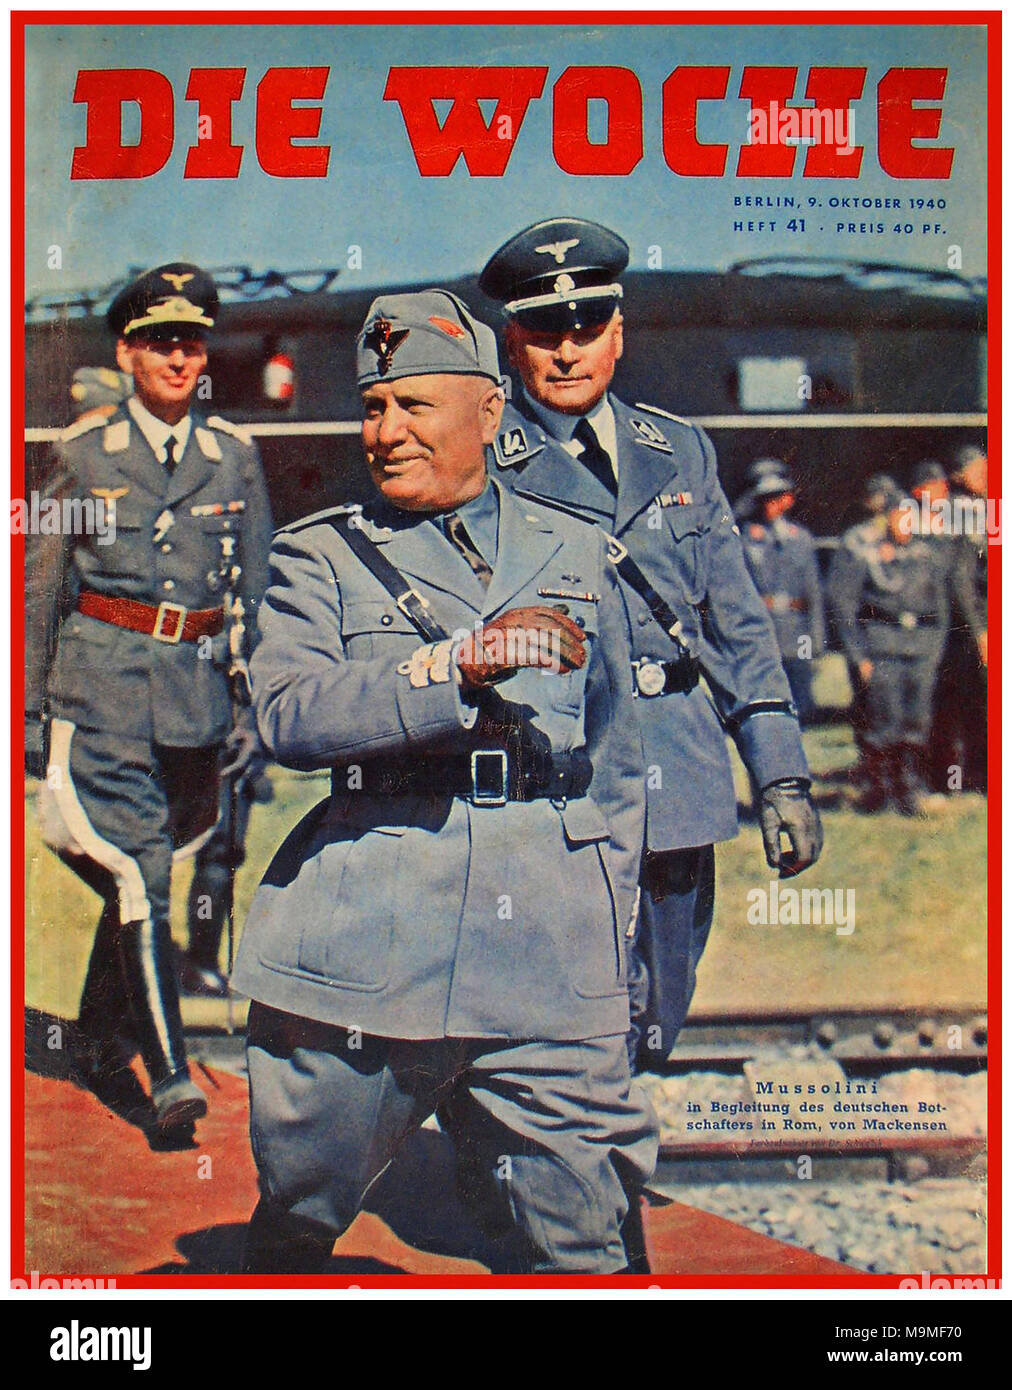 1940 MUSSOLINI Militäruniform die Woche Deutsch WW2 Nazi Propaganda Magazin. Mussolini, begleitet vom deutschen Botschafter in Rom, dem deutschen Nazi-General Eberhard von Mackensen Stockfoto